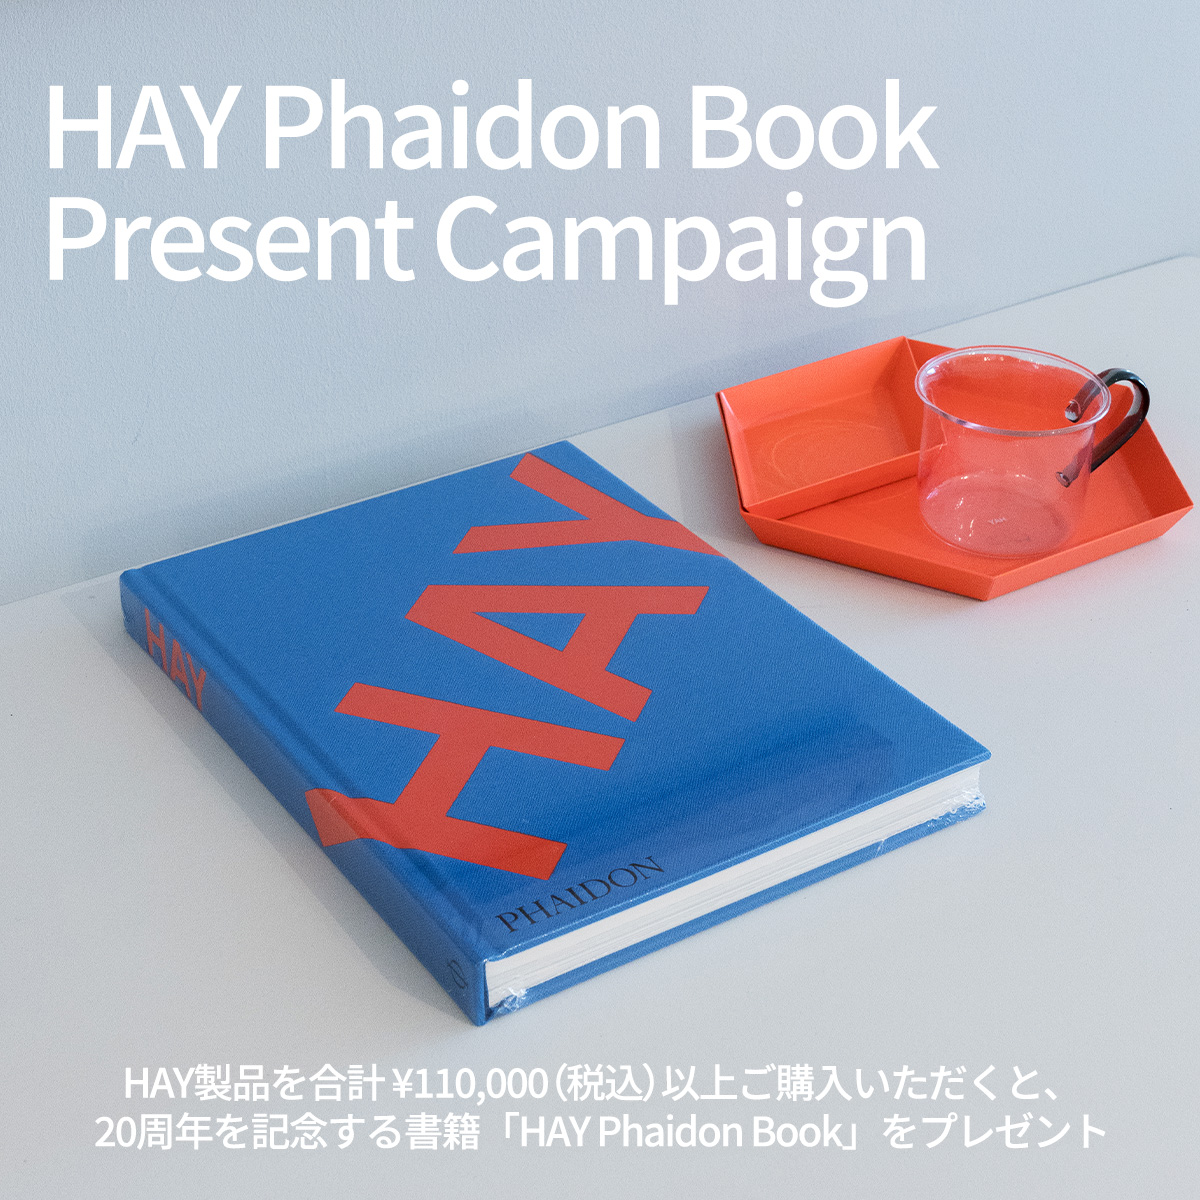 HAY Phaidon Book Present Campaign ヘイ ファイドン ブック プレゼントキャンペーン